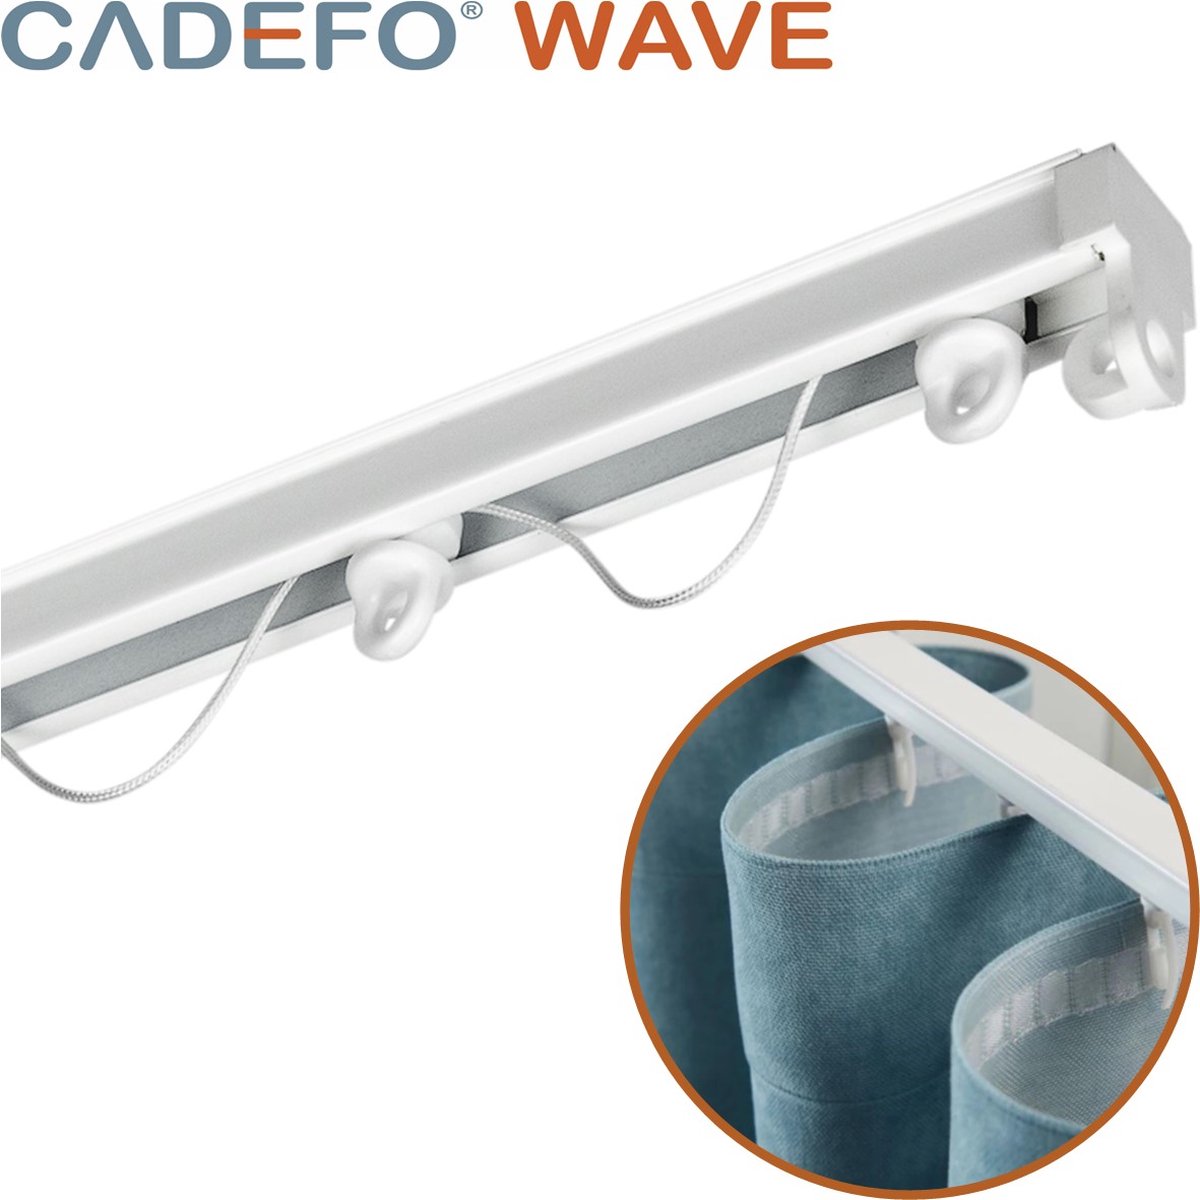 CADEFO WAVE (351 - 400 cm) Gordijnrails - Compleet op maat! - UIT 1 STUK - Leverbaar tot 6 meter - Plafondbevestiging - Lengte 390 cm